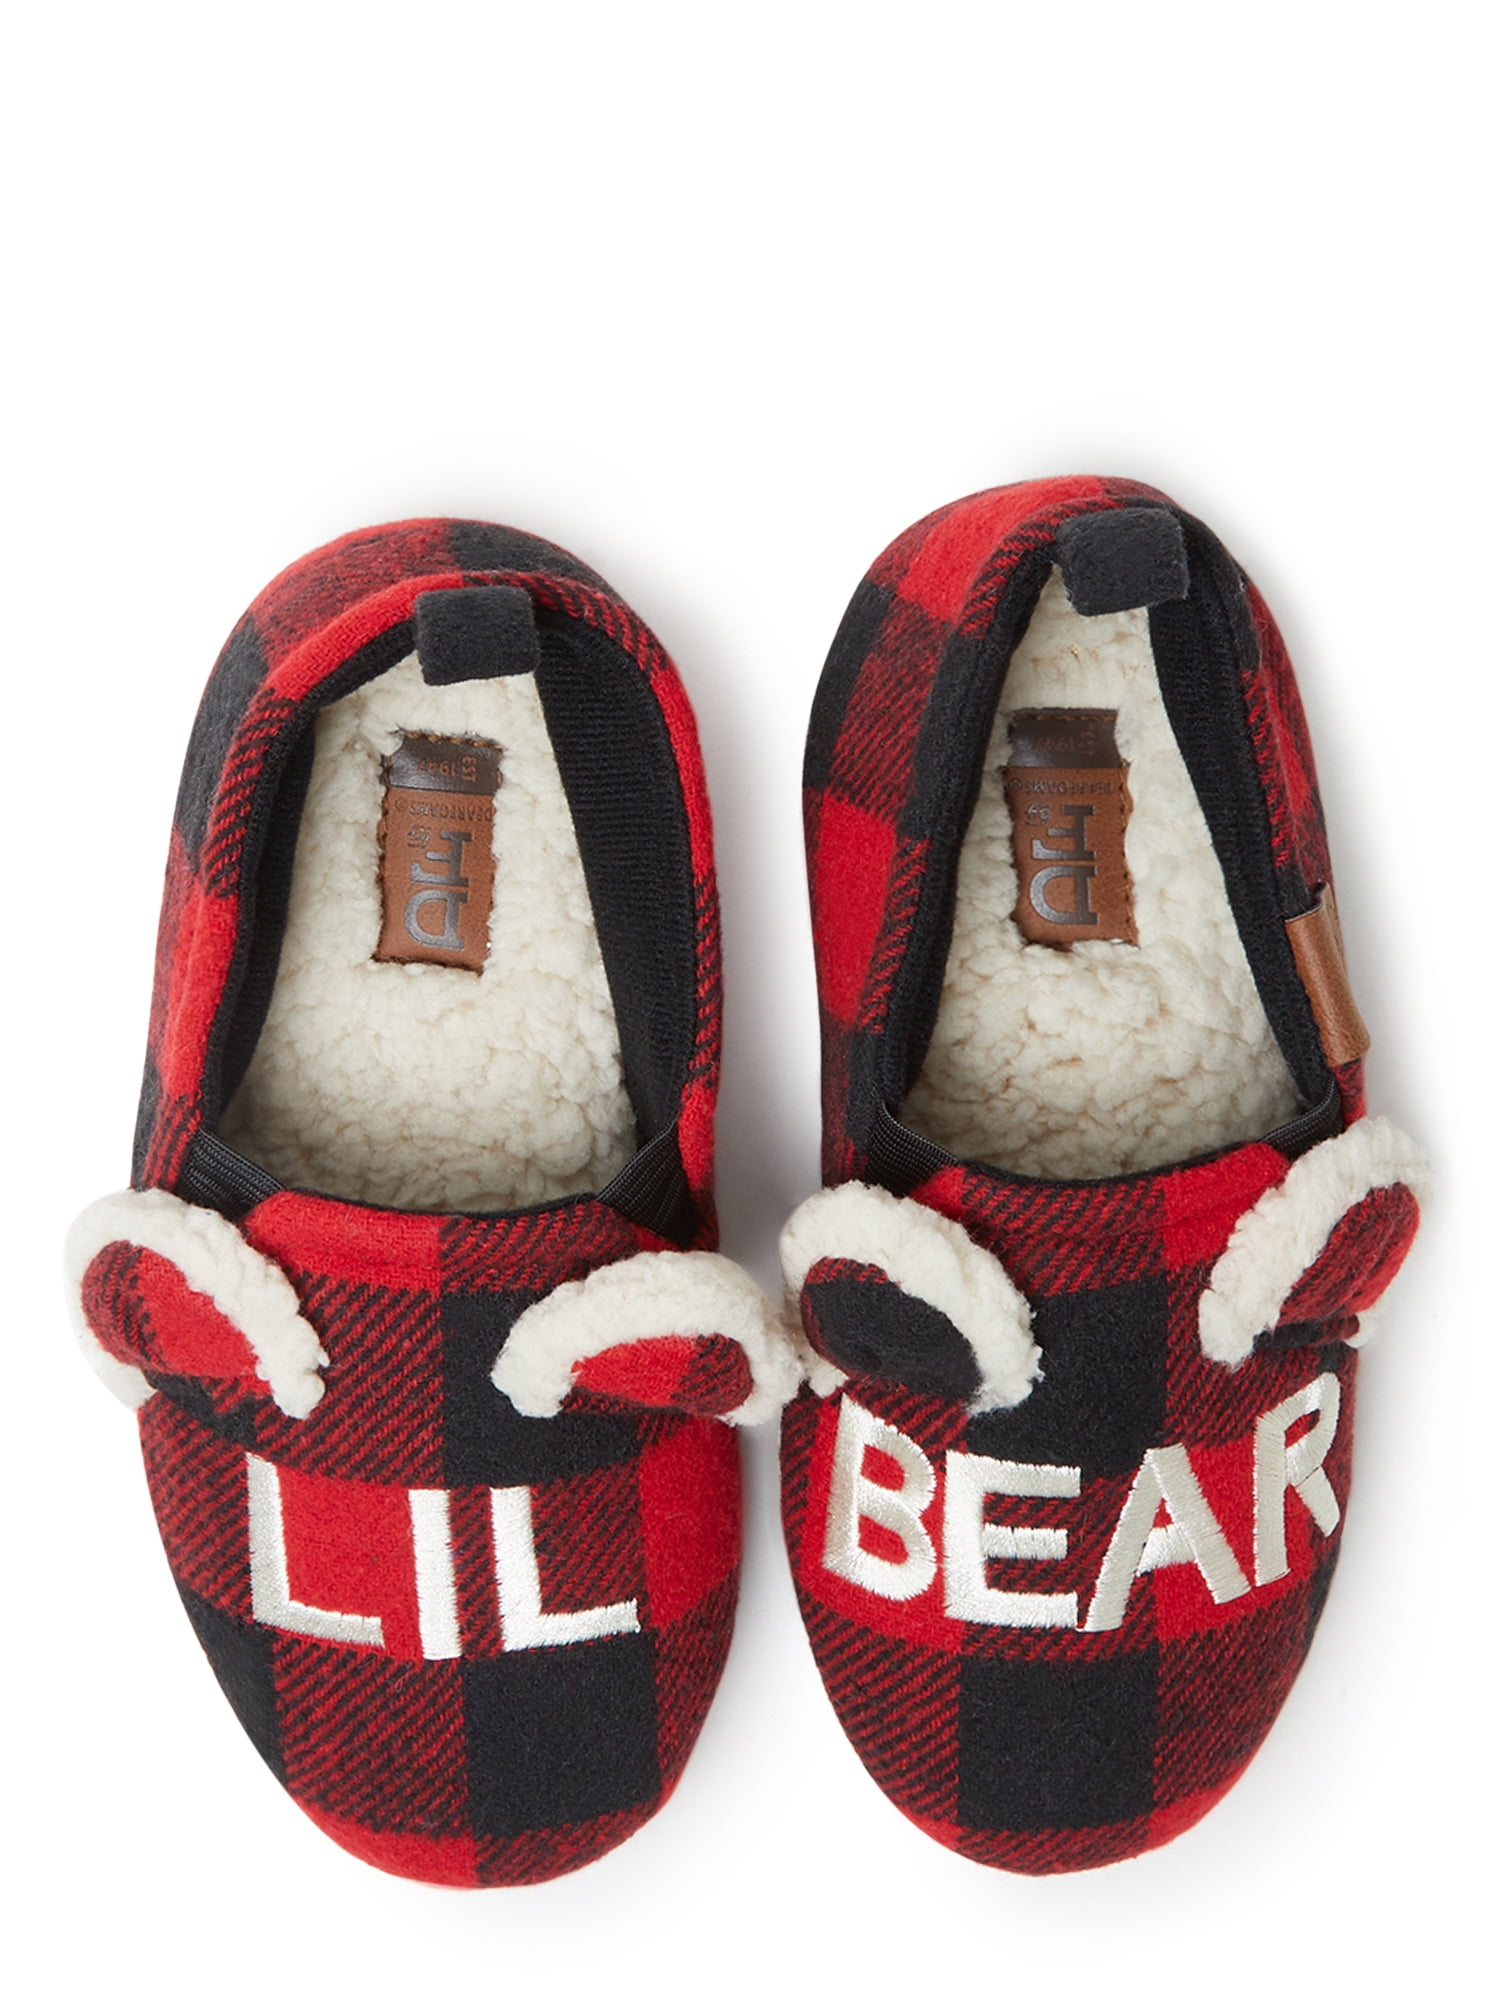 lil bear slippers kohls